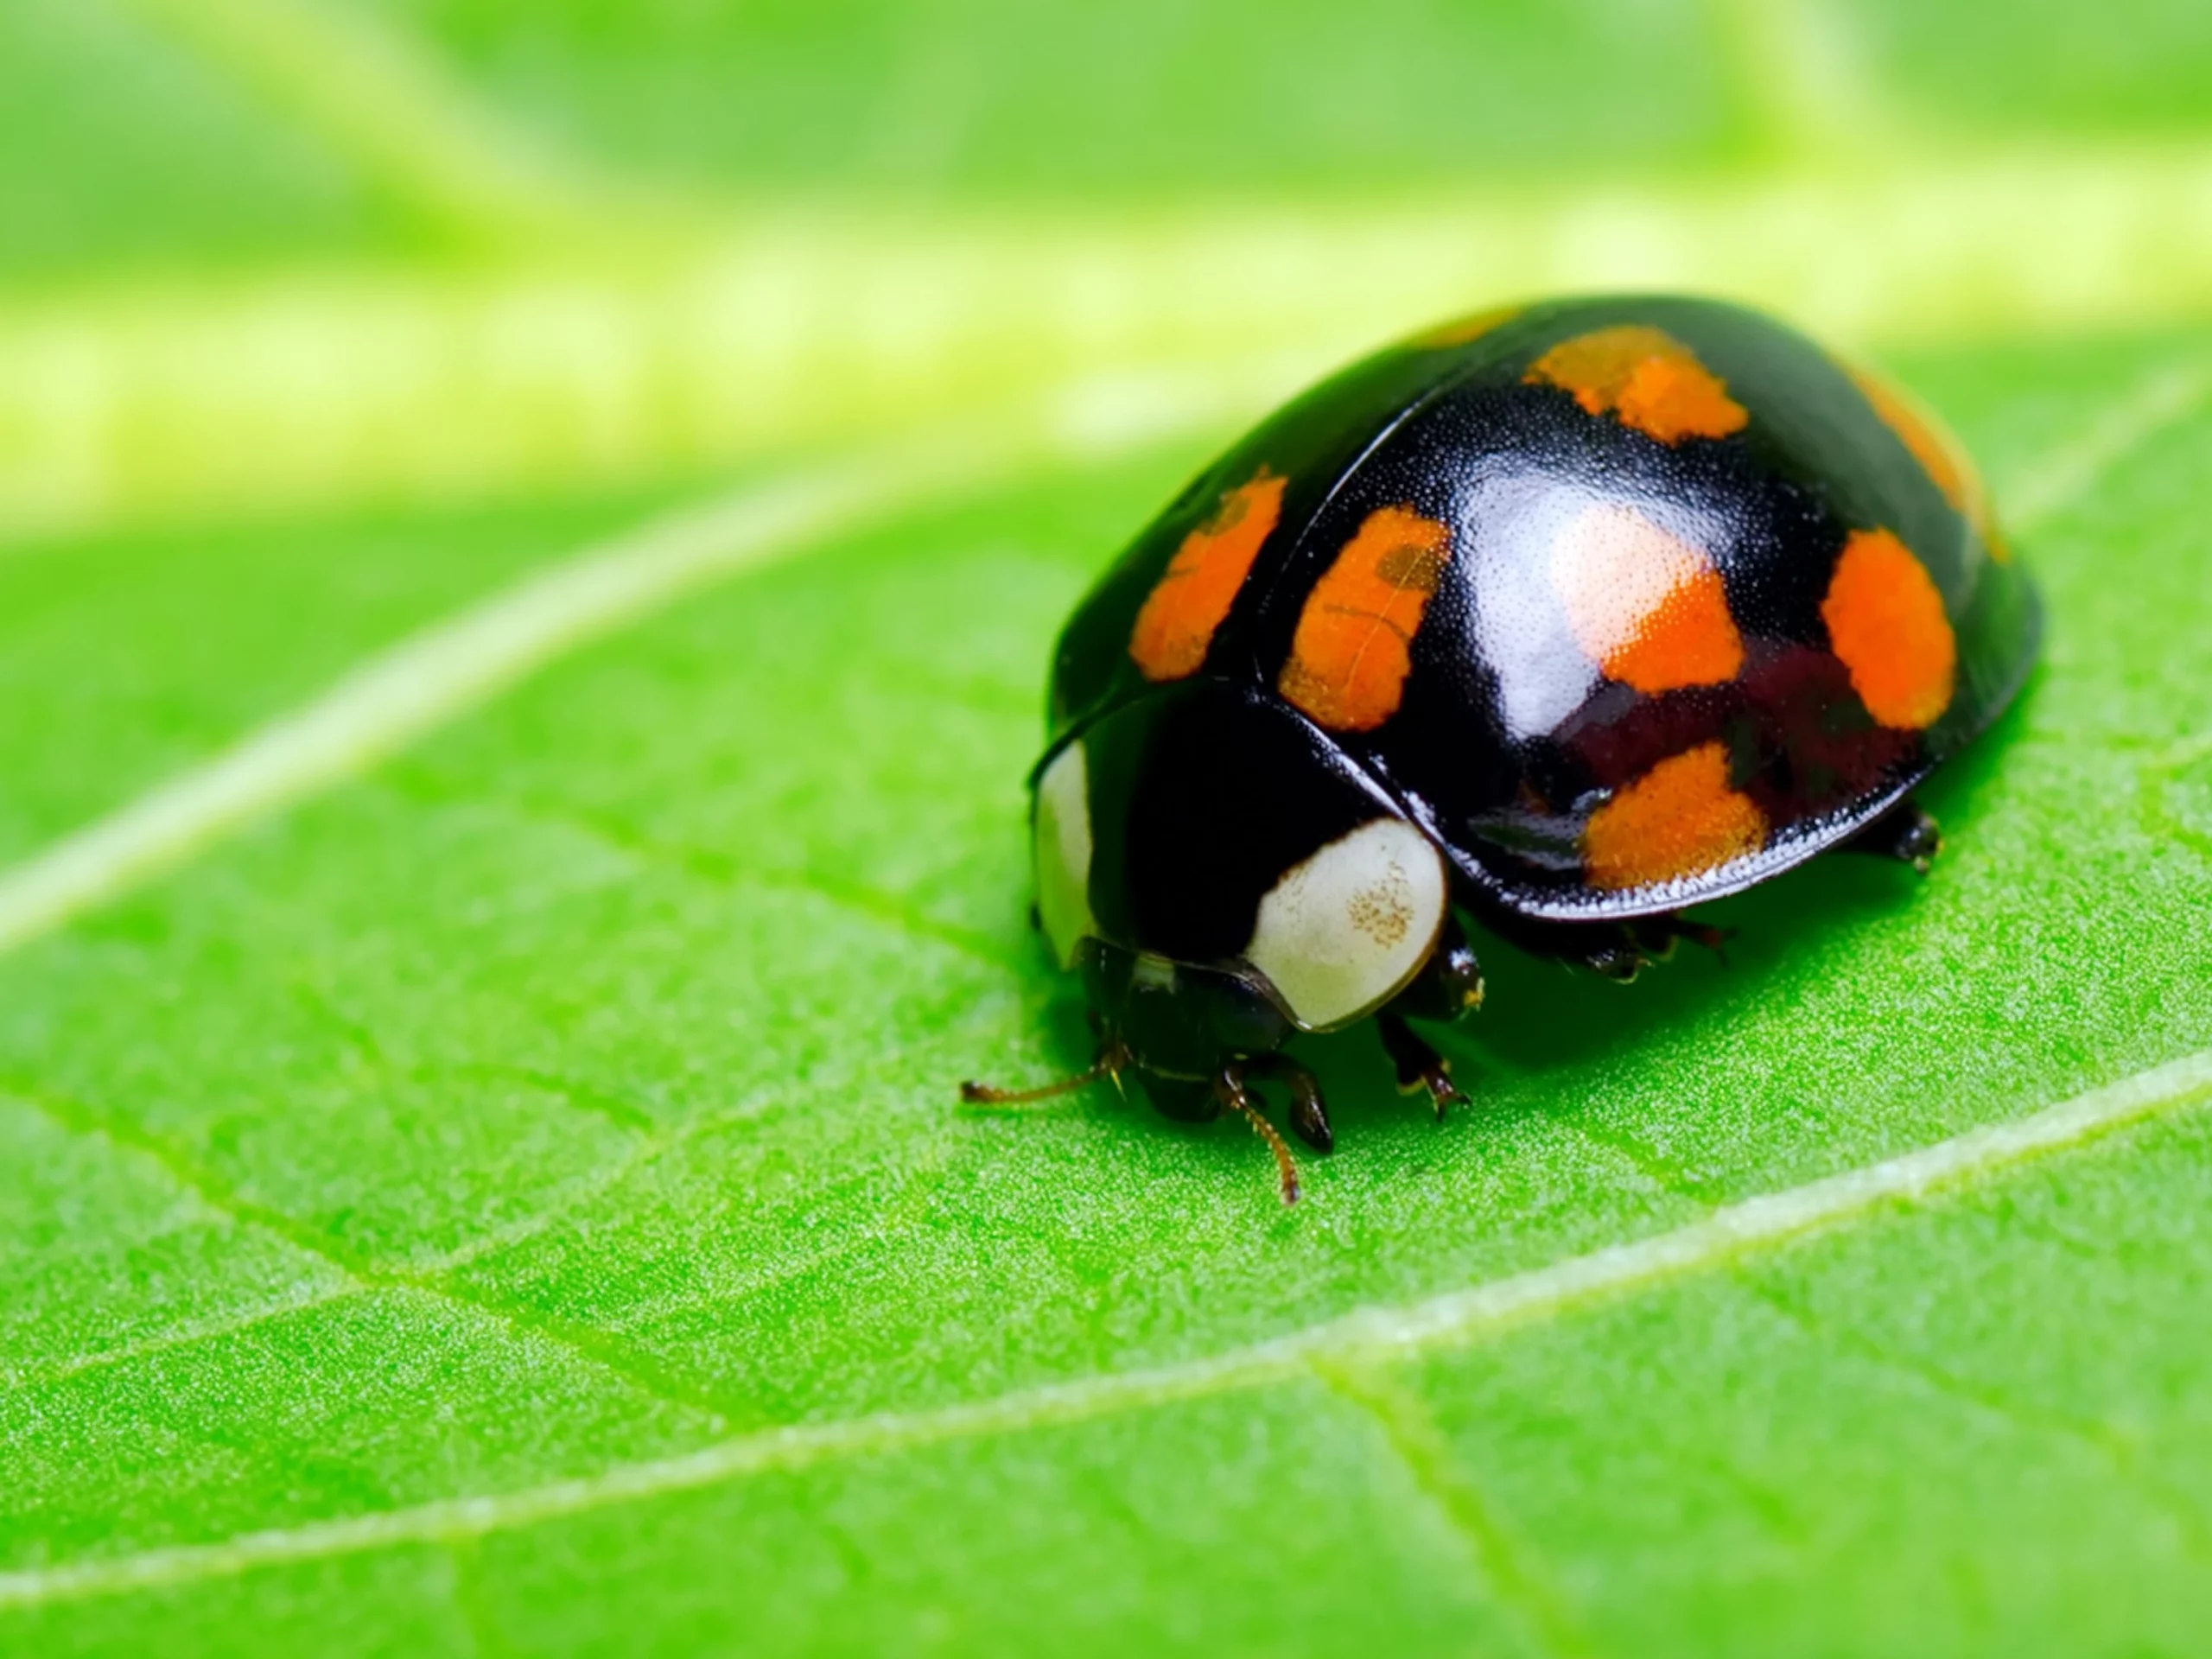 Ladybug Facts